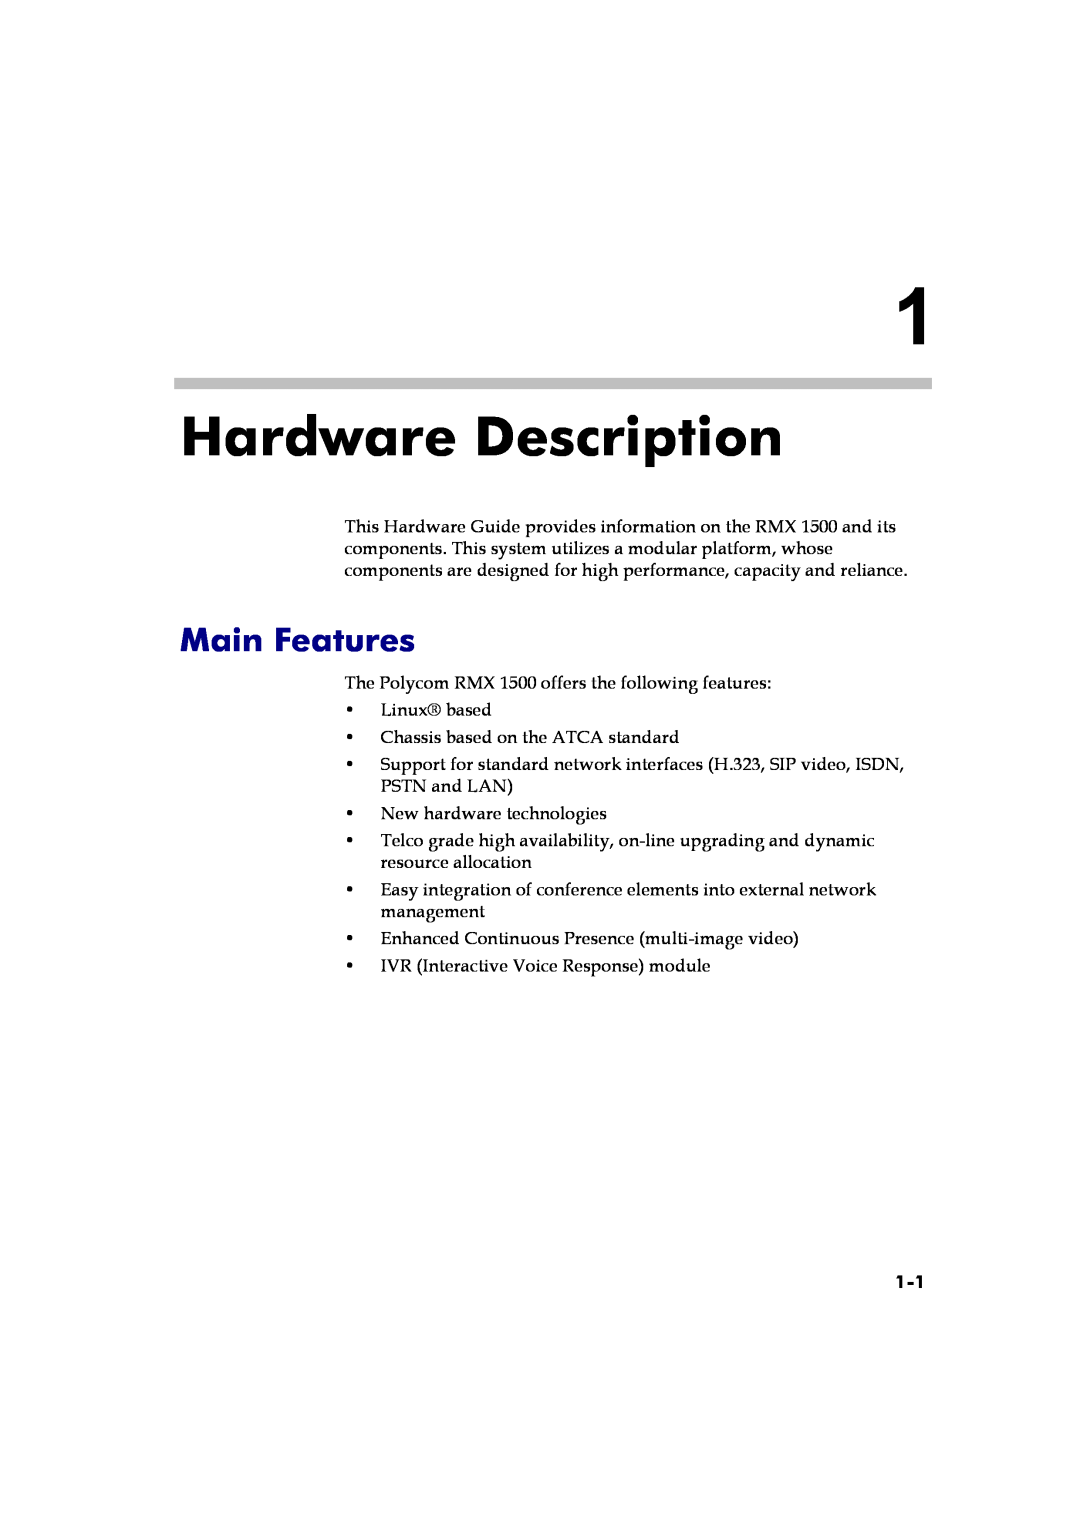 Polycom DOC2557A manual Hardware Description, Main Features 